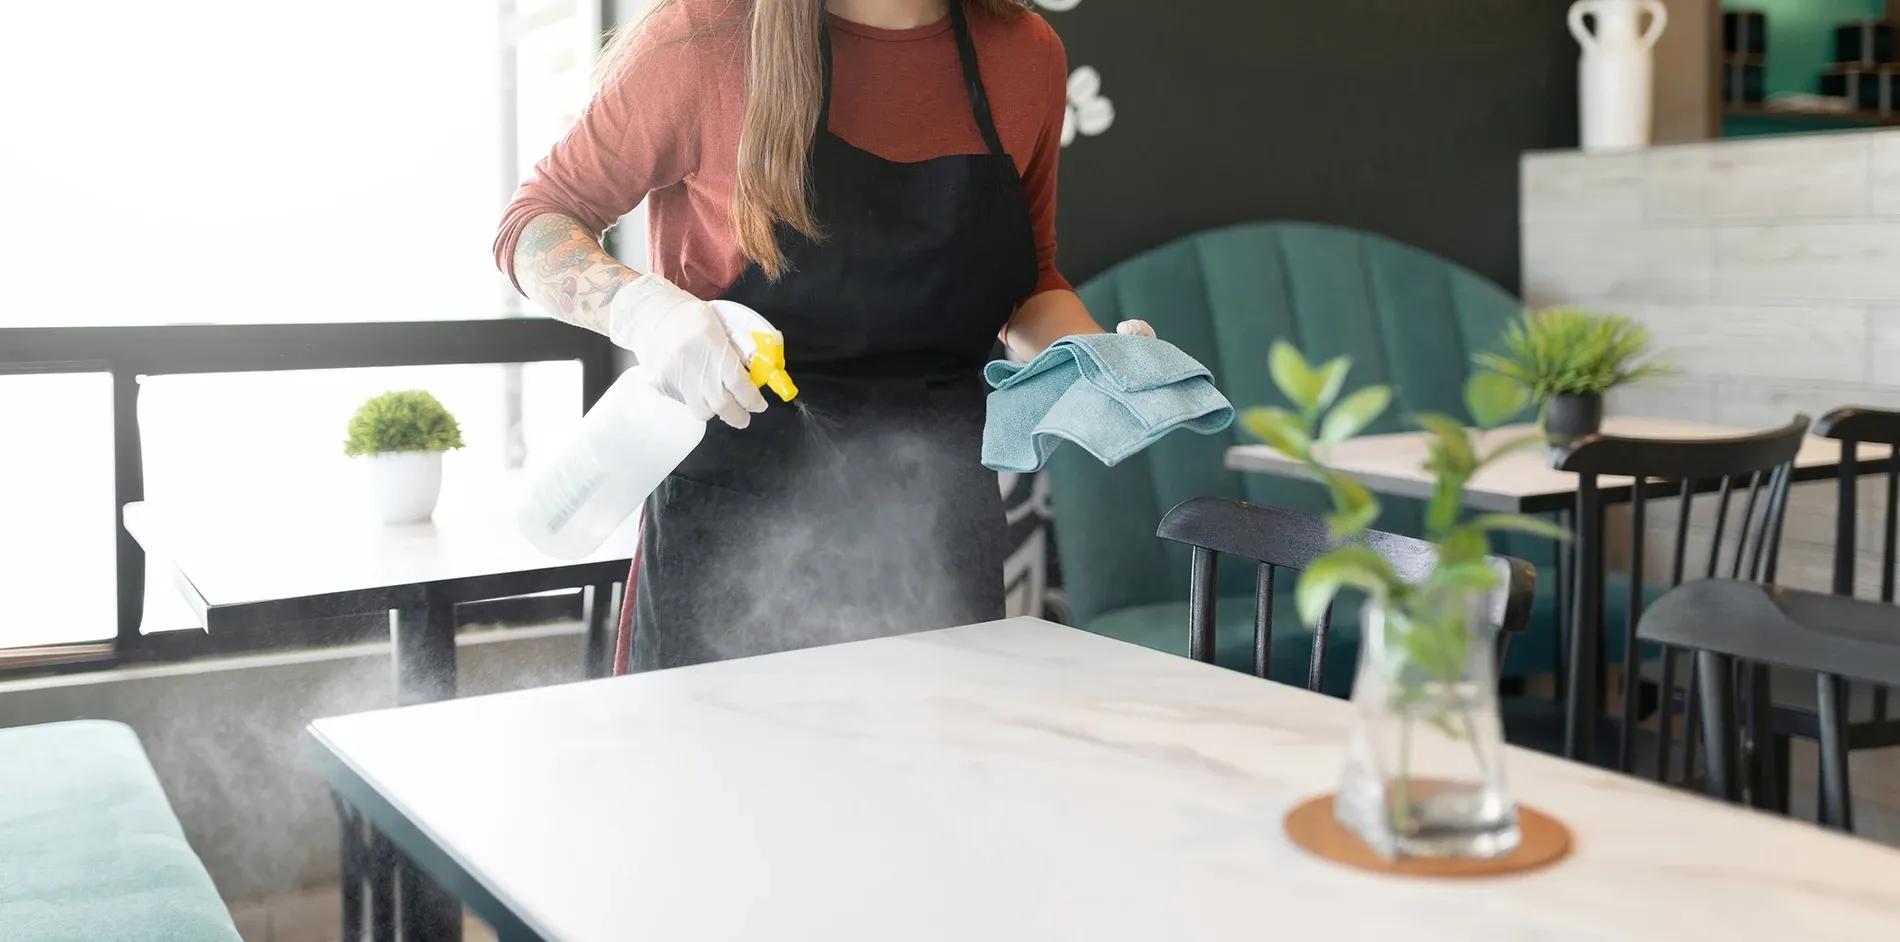 Städerska med städhandskar sprutar rengörsingsmedel på restaurangbord inför restaurangstädning